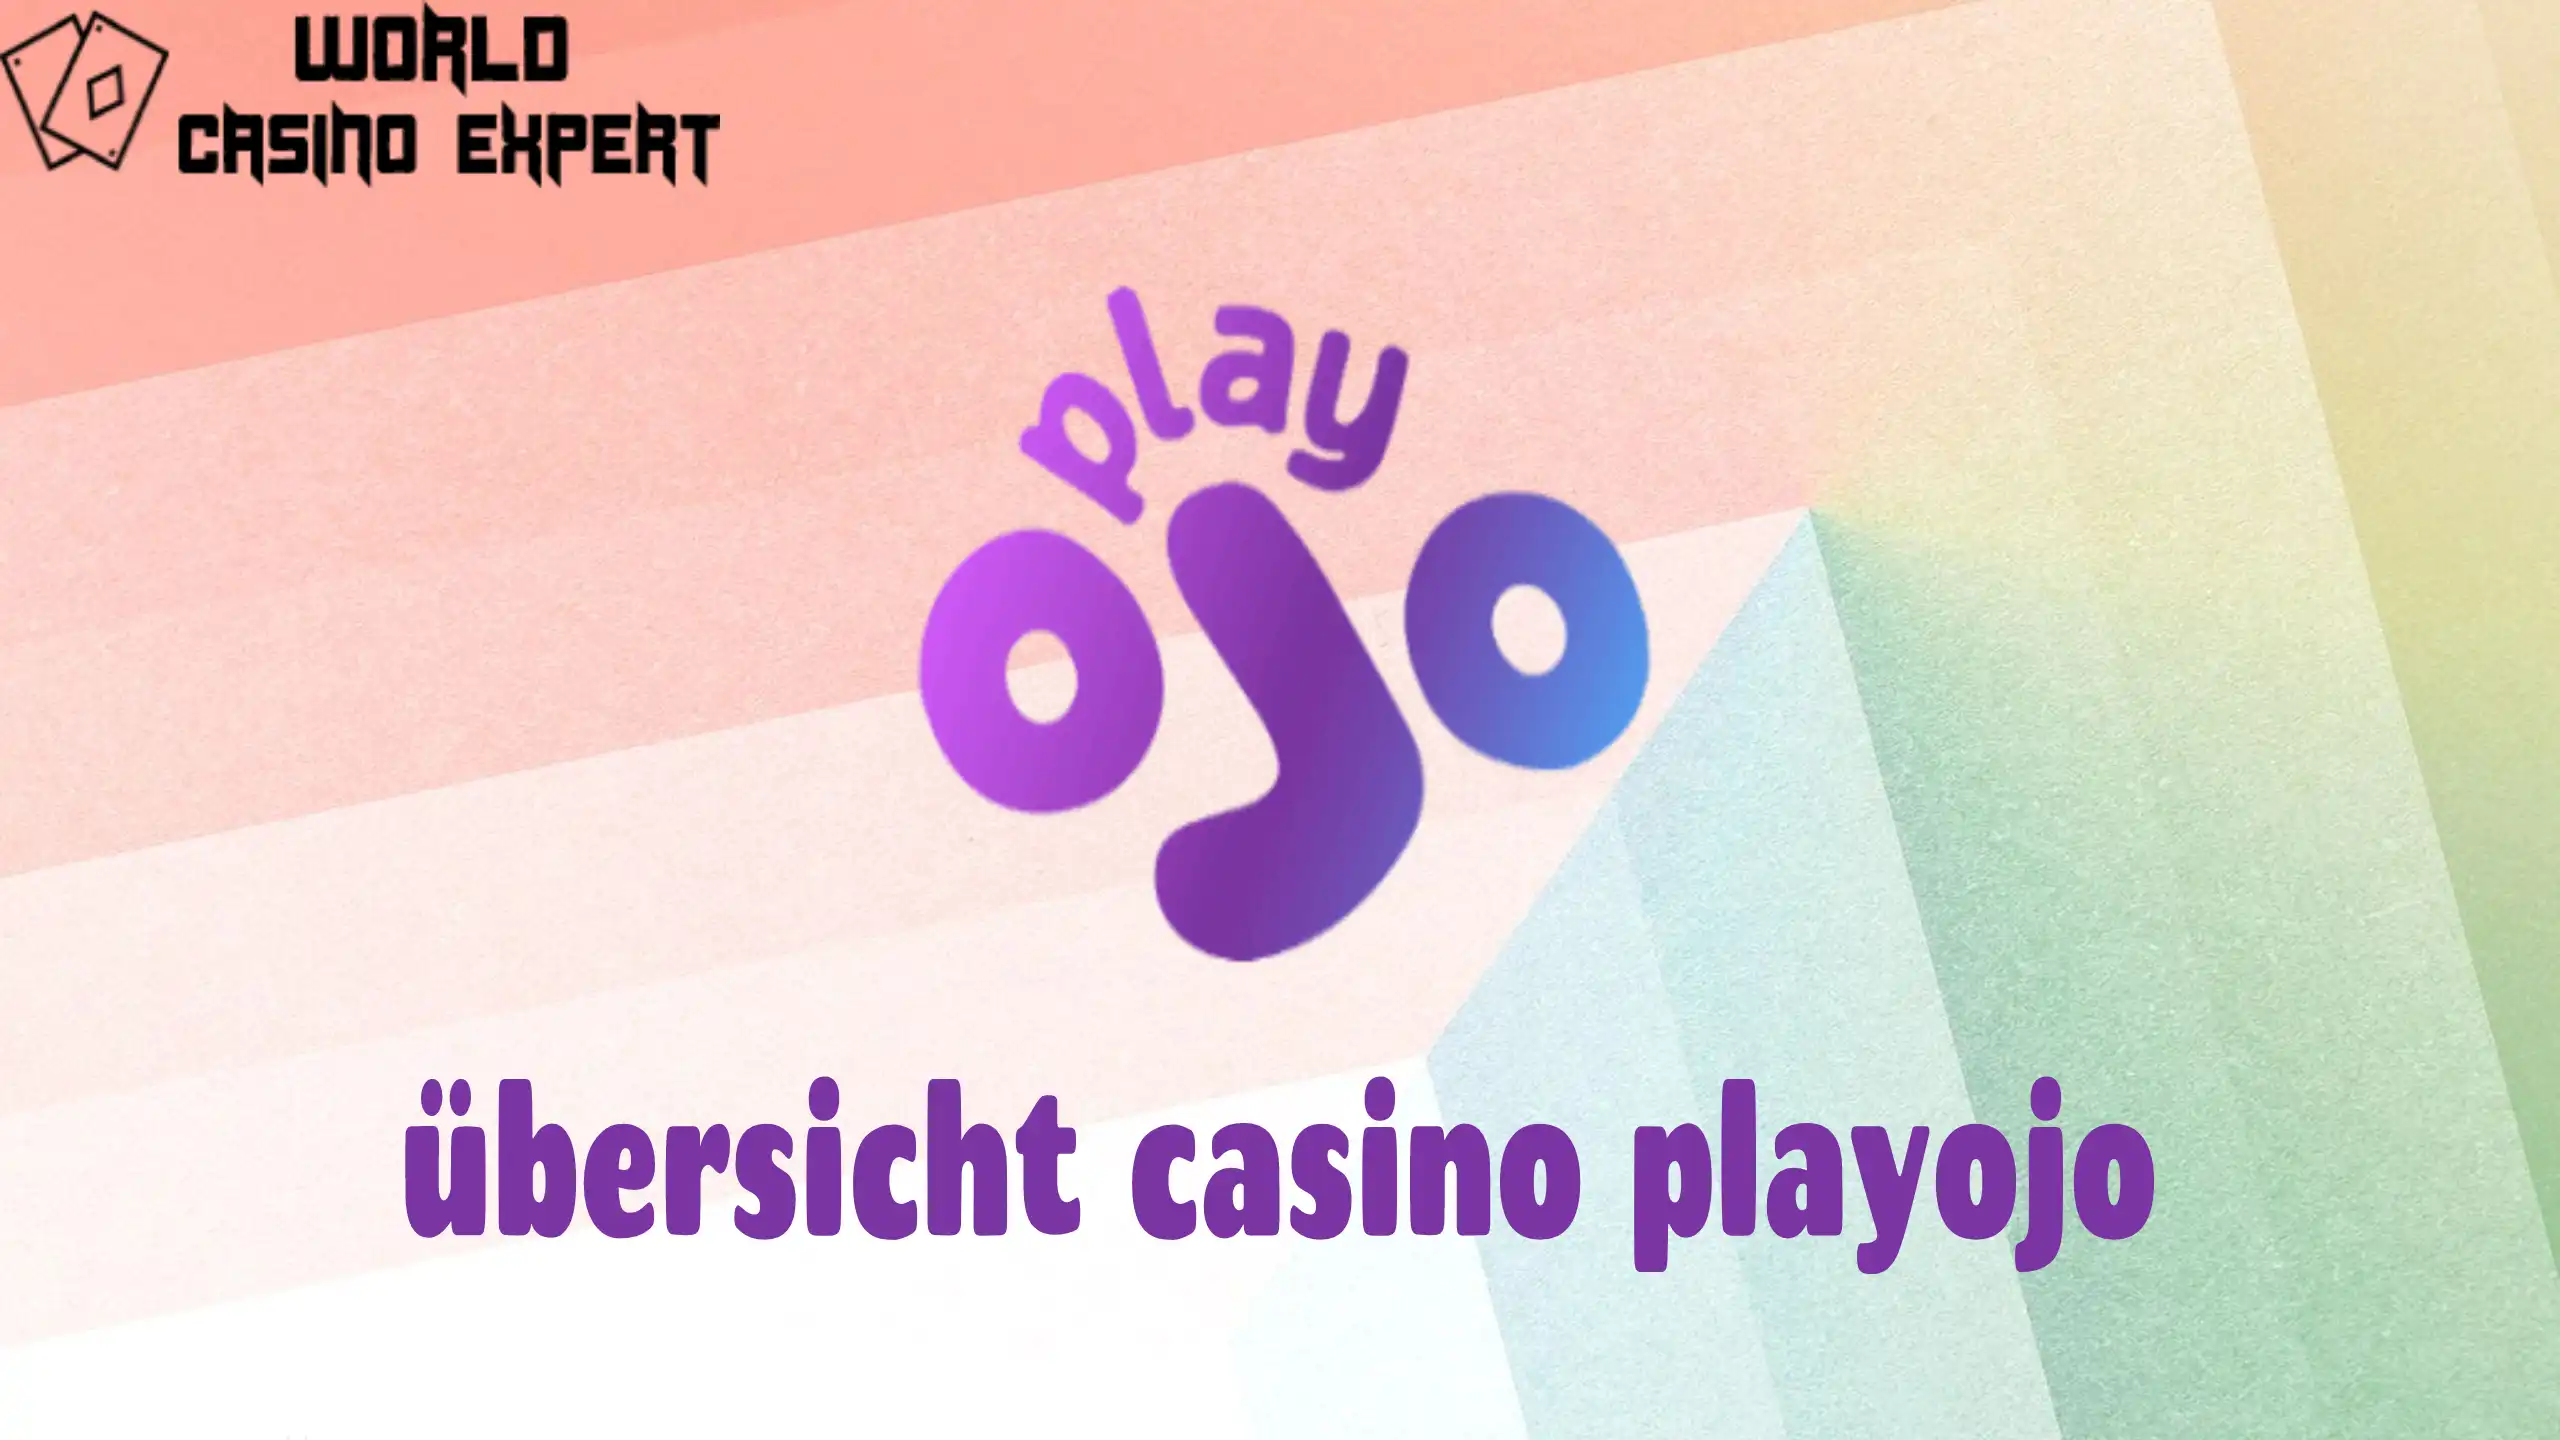 übersicht casino playojo | World Casino Expert Germany